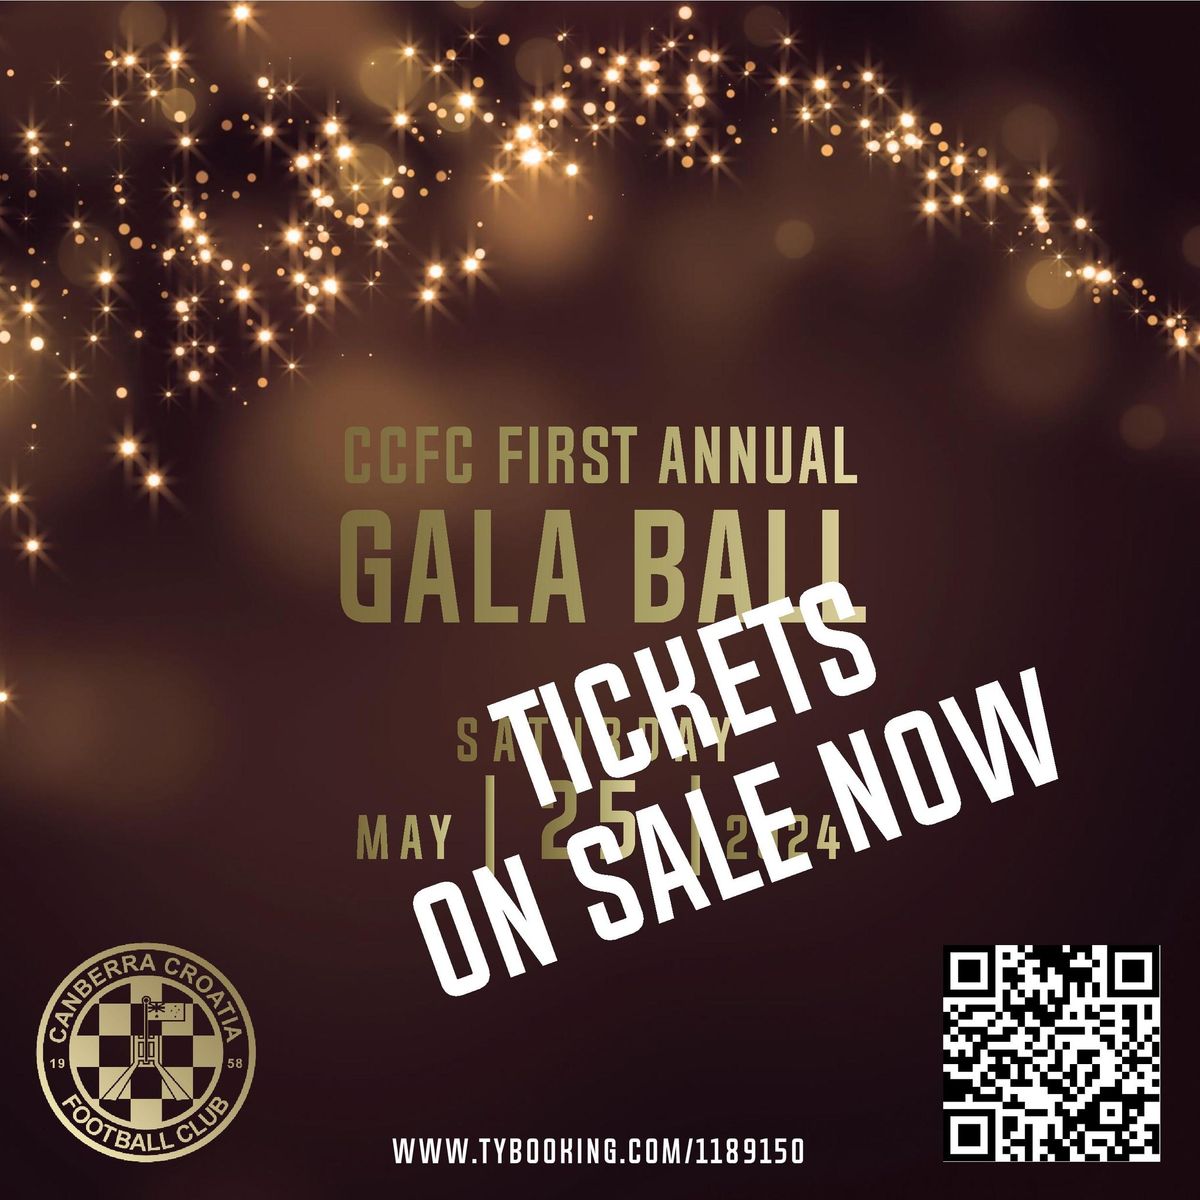 CCFC First Annual Gala Ball